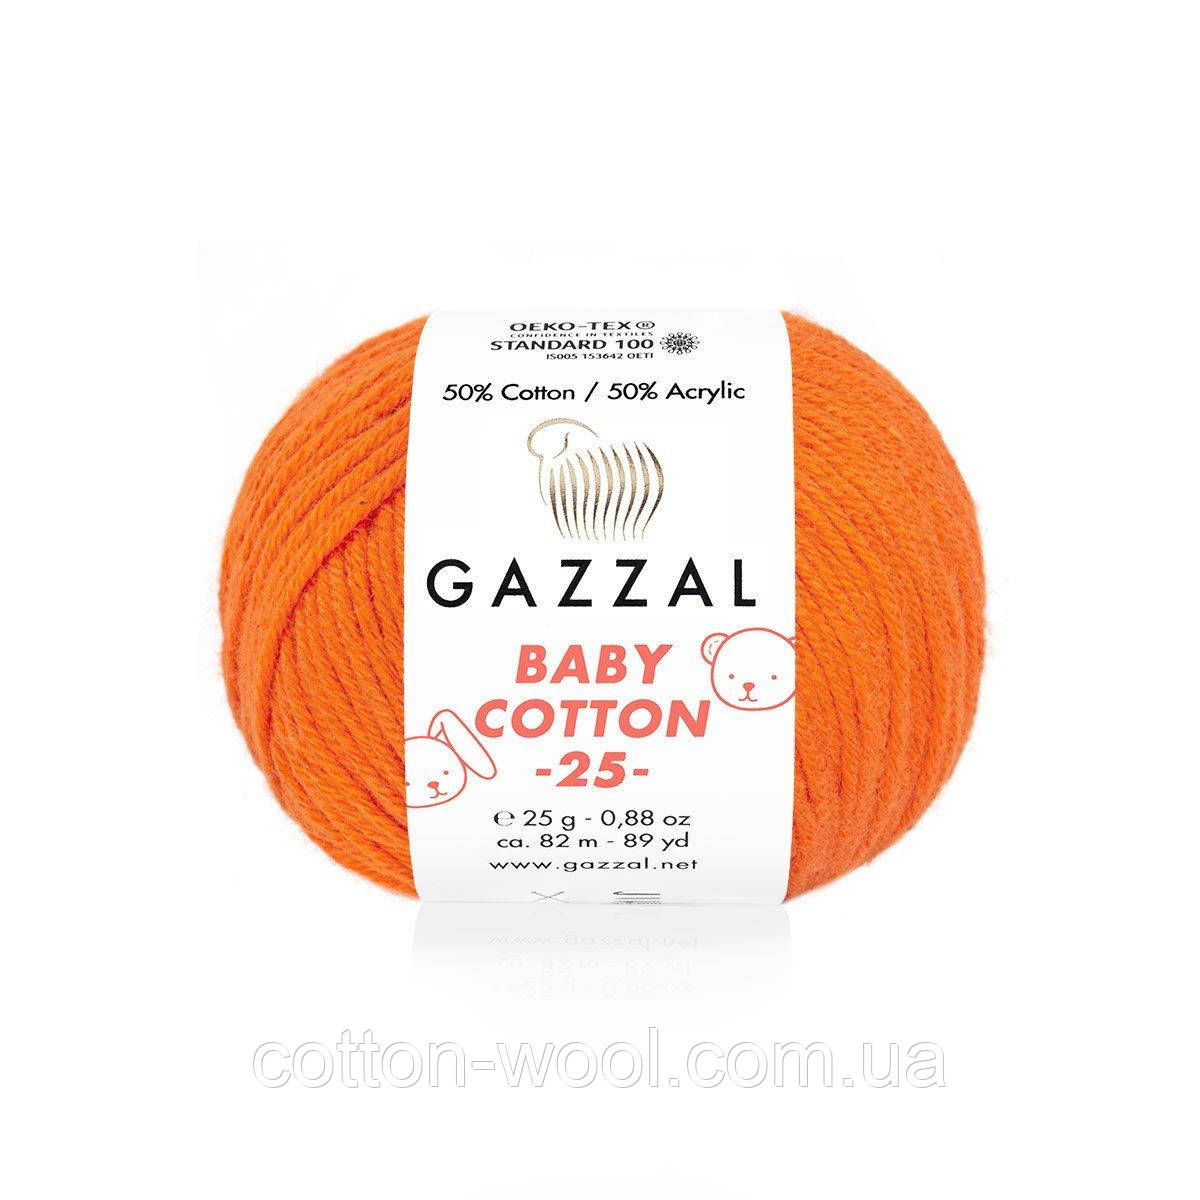 Gazzal Baby Cotton 25 (Бебі коттон 25) 3419